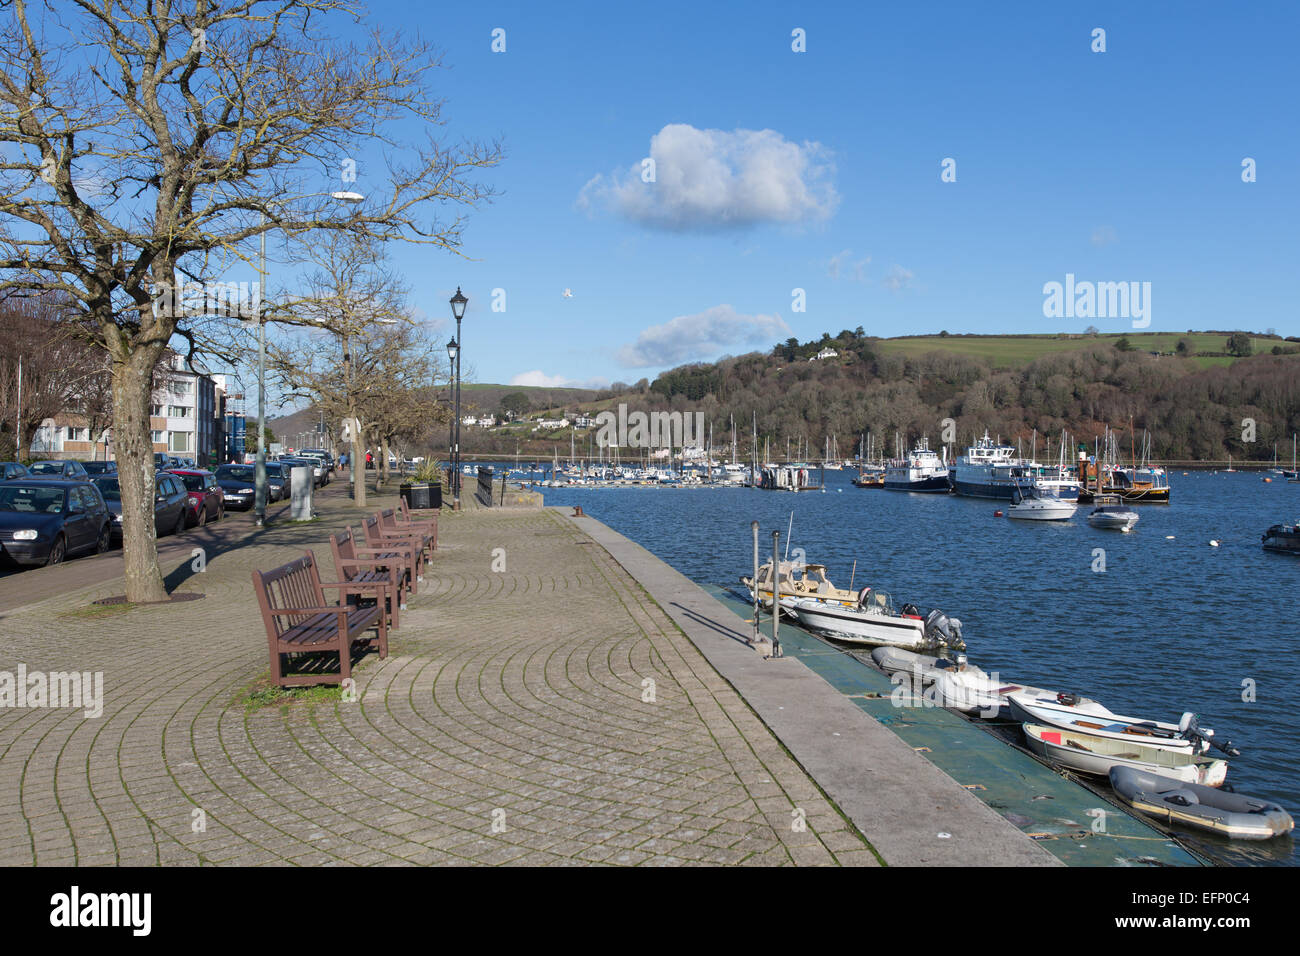 Città di Dartmouth, Inghilterra. Dartmouth sul lungomare a sud di Embankment, con il fiume Dart e in background. Foto Stock